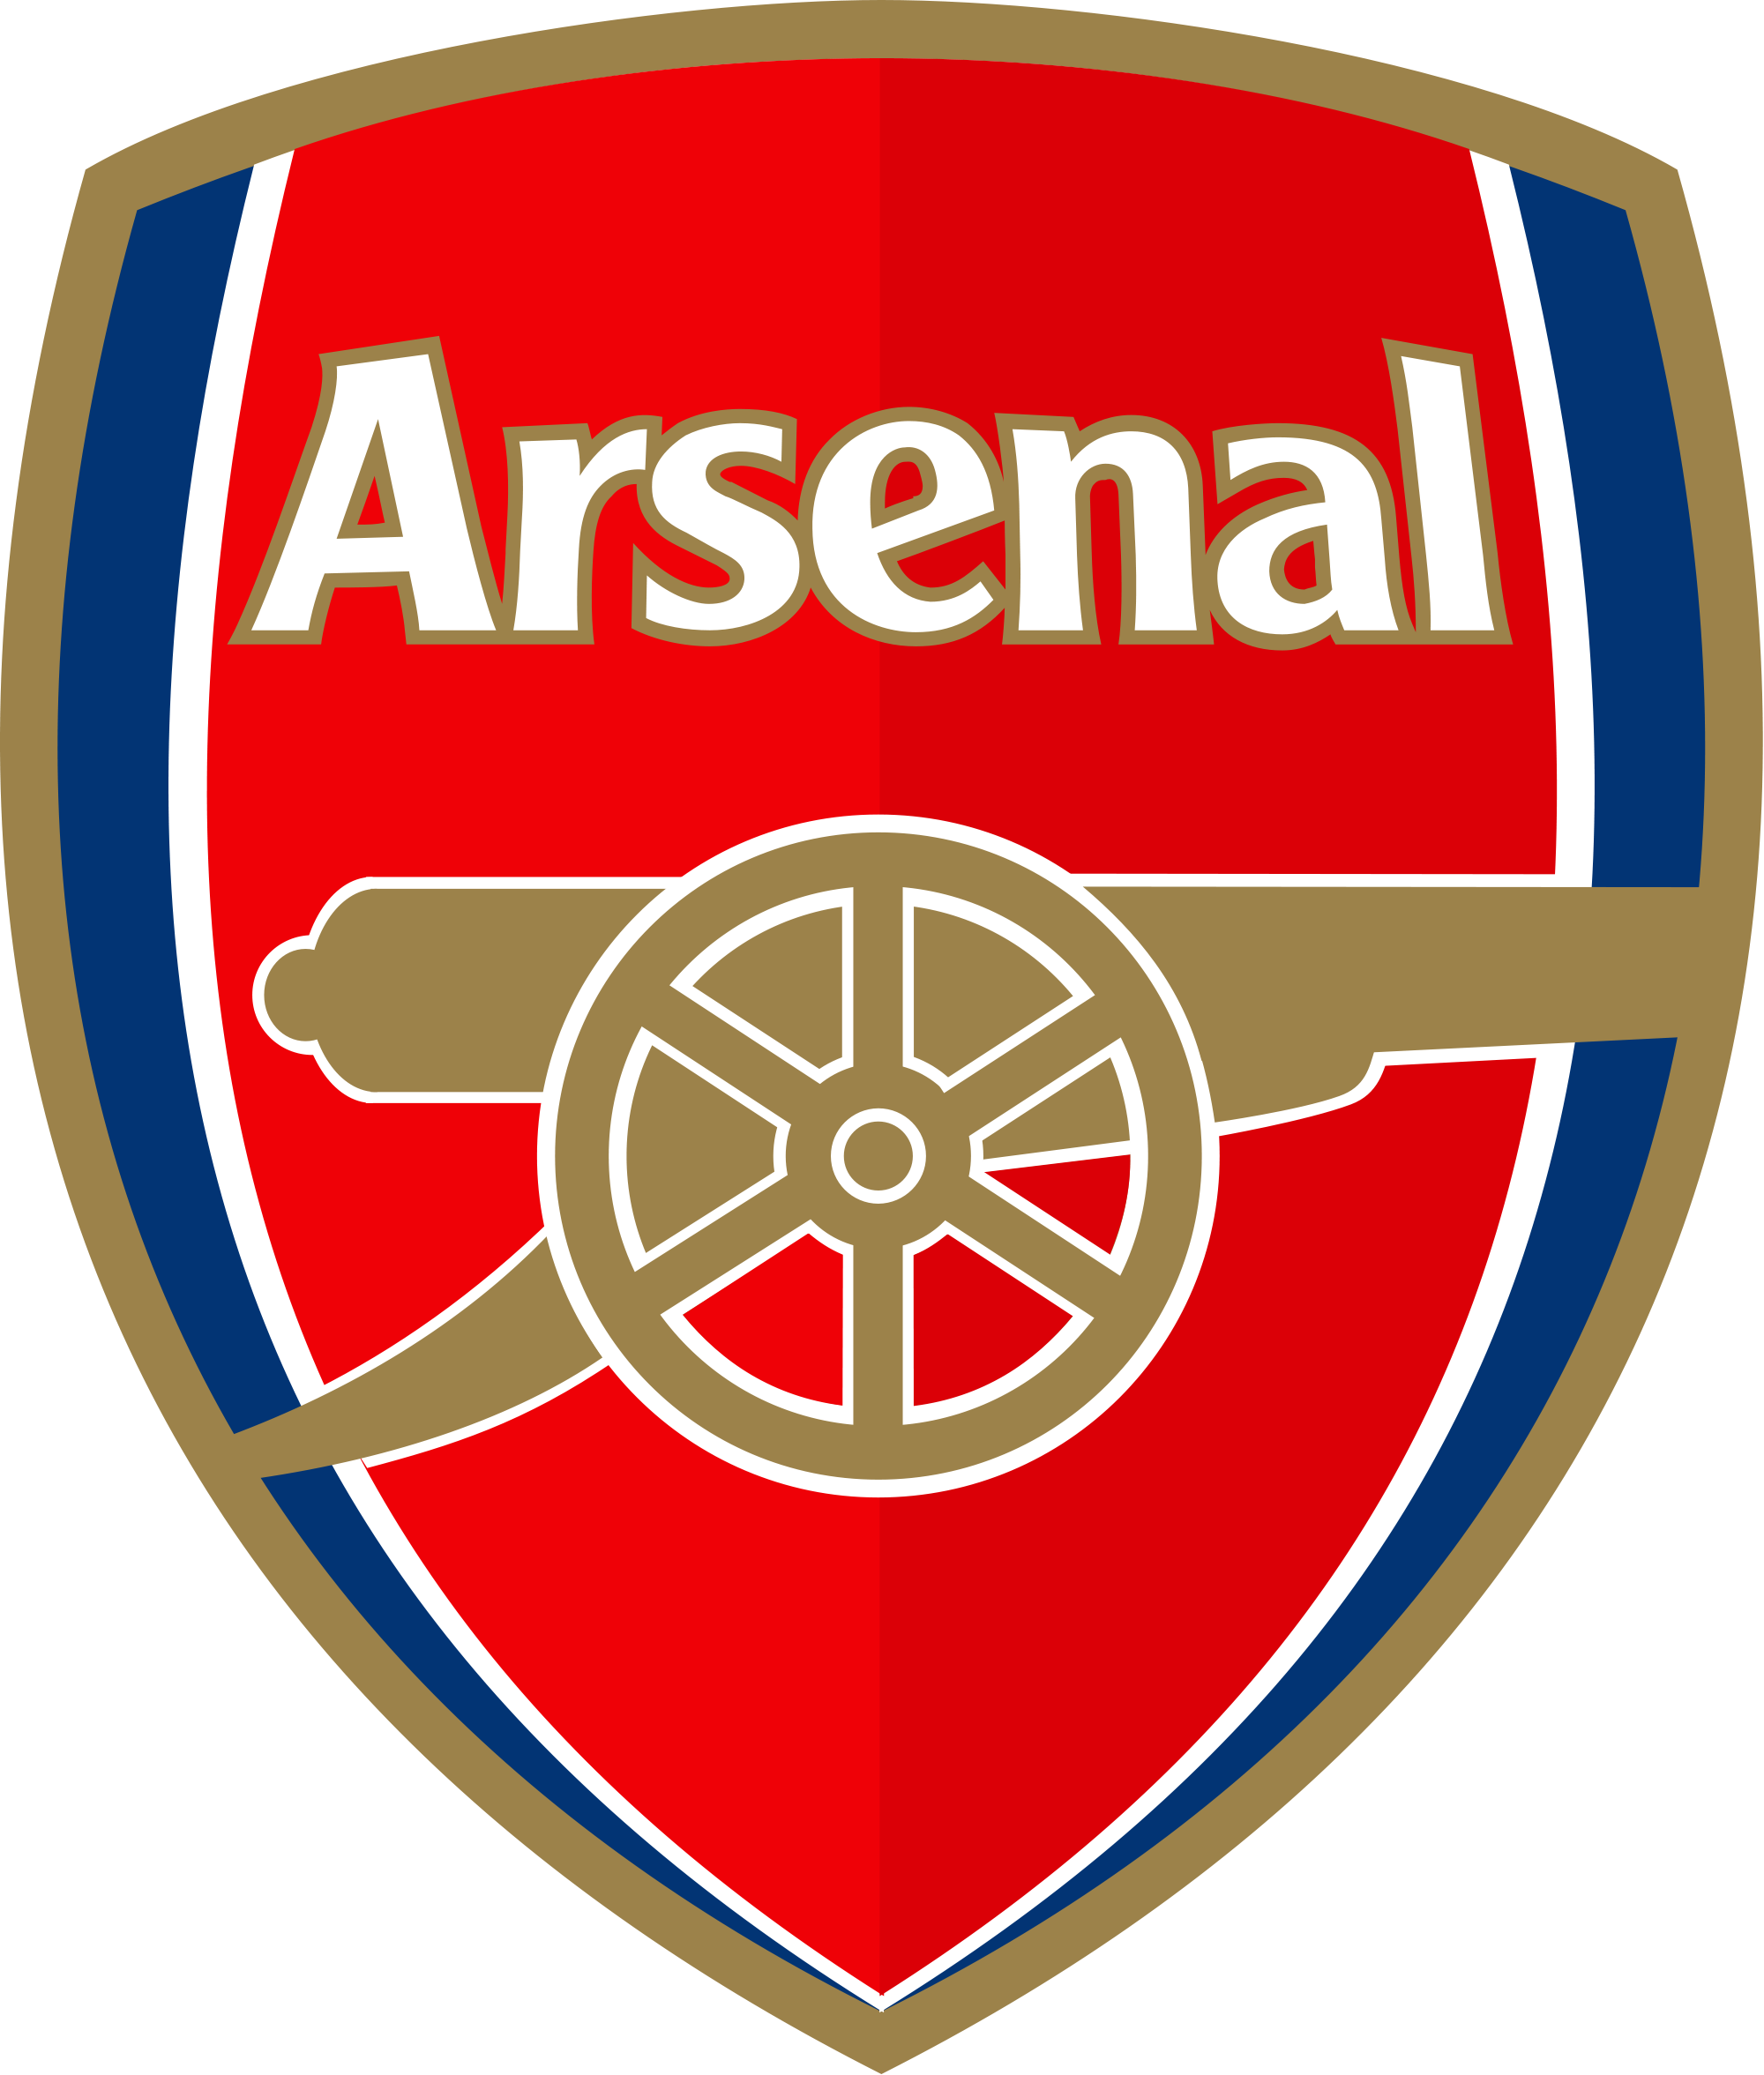 Arsenal_logo.png